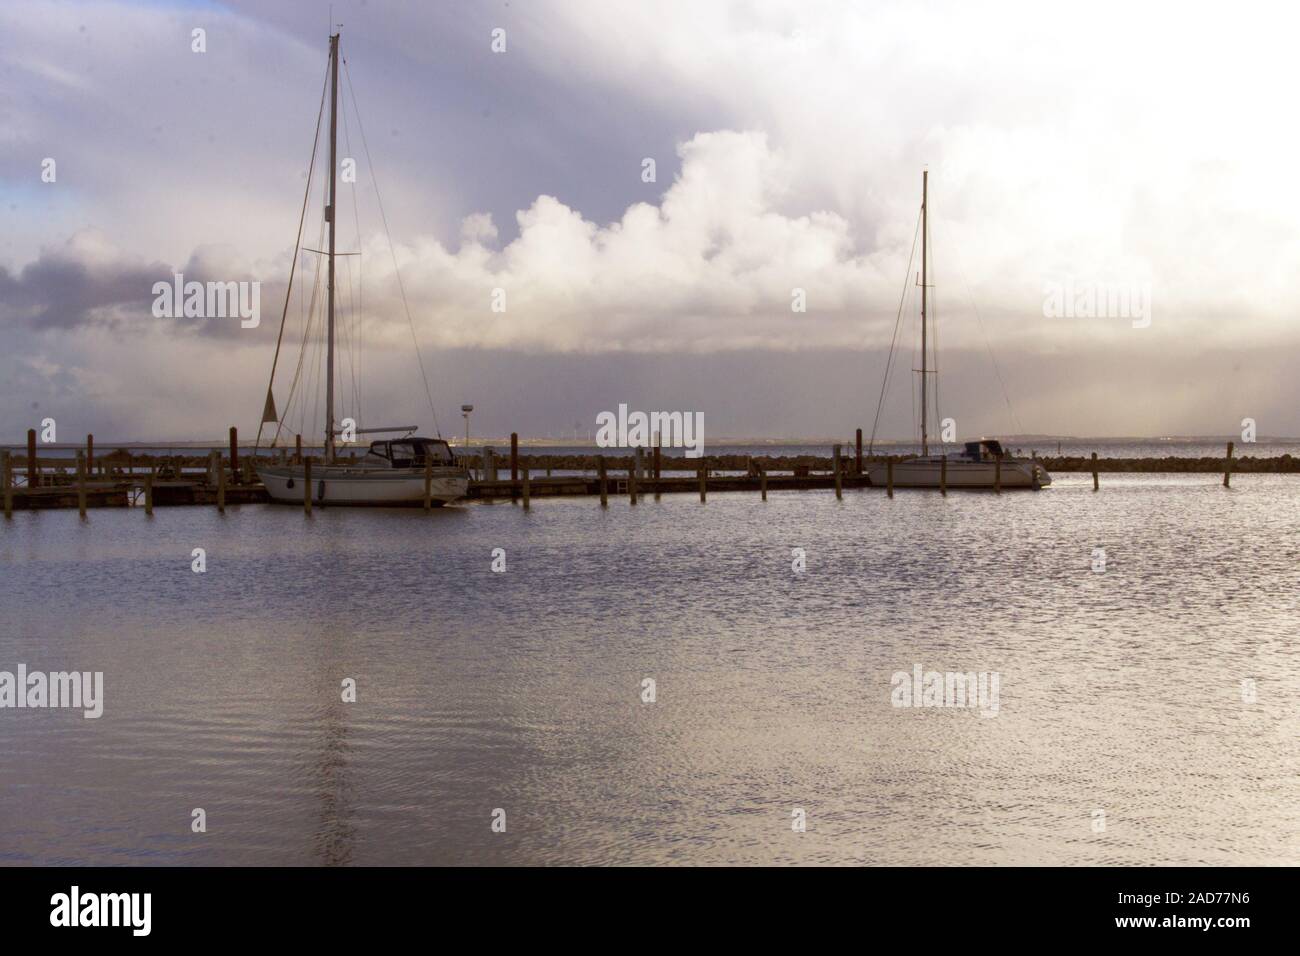 Harbor sunrise with docked sailing ships Stock Photo